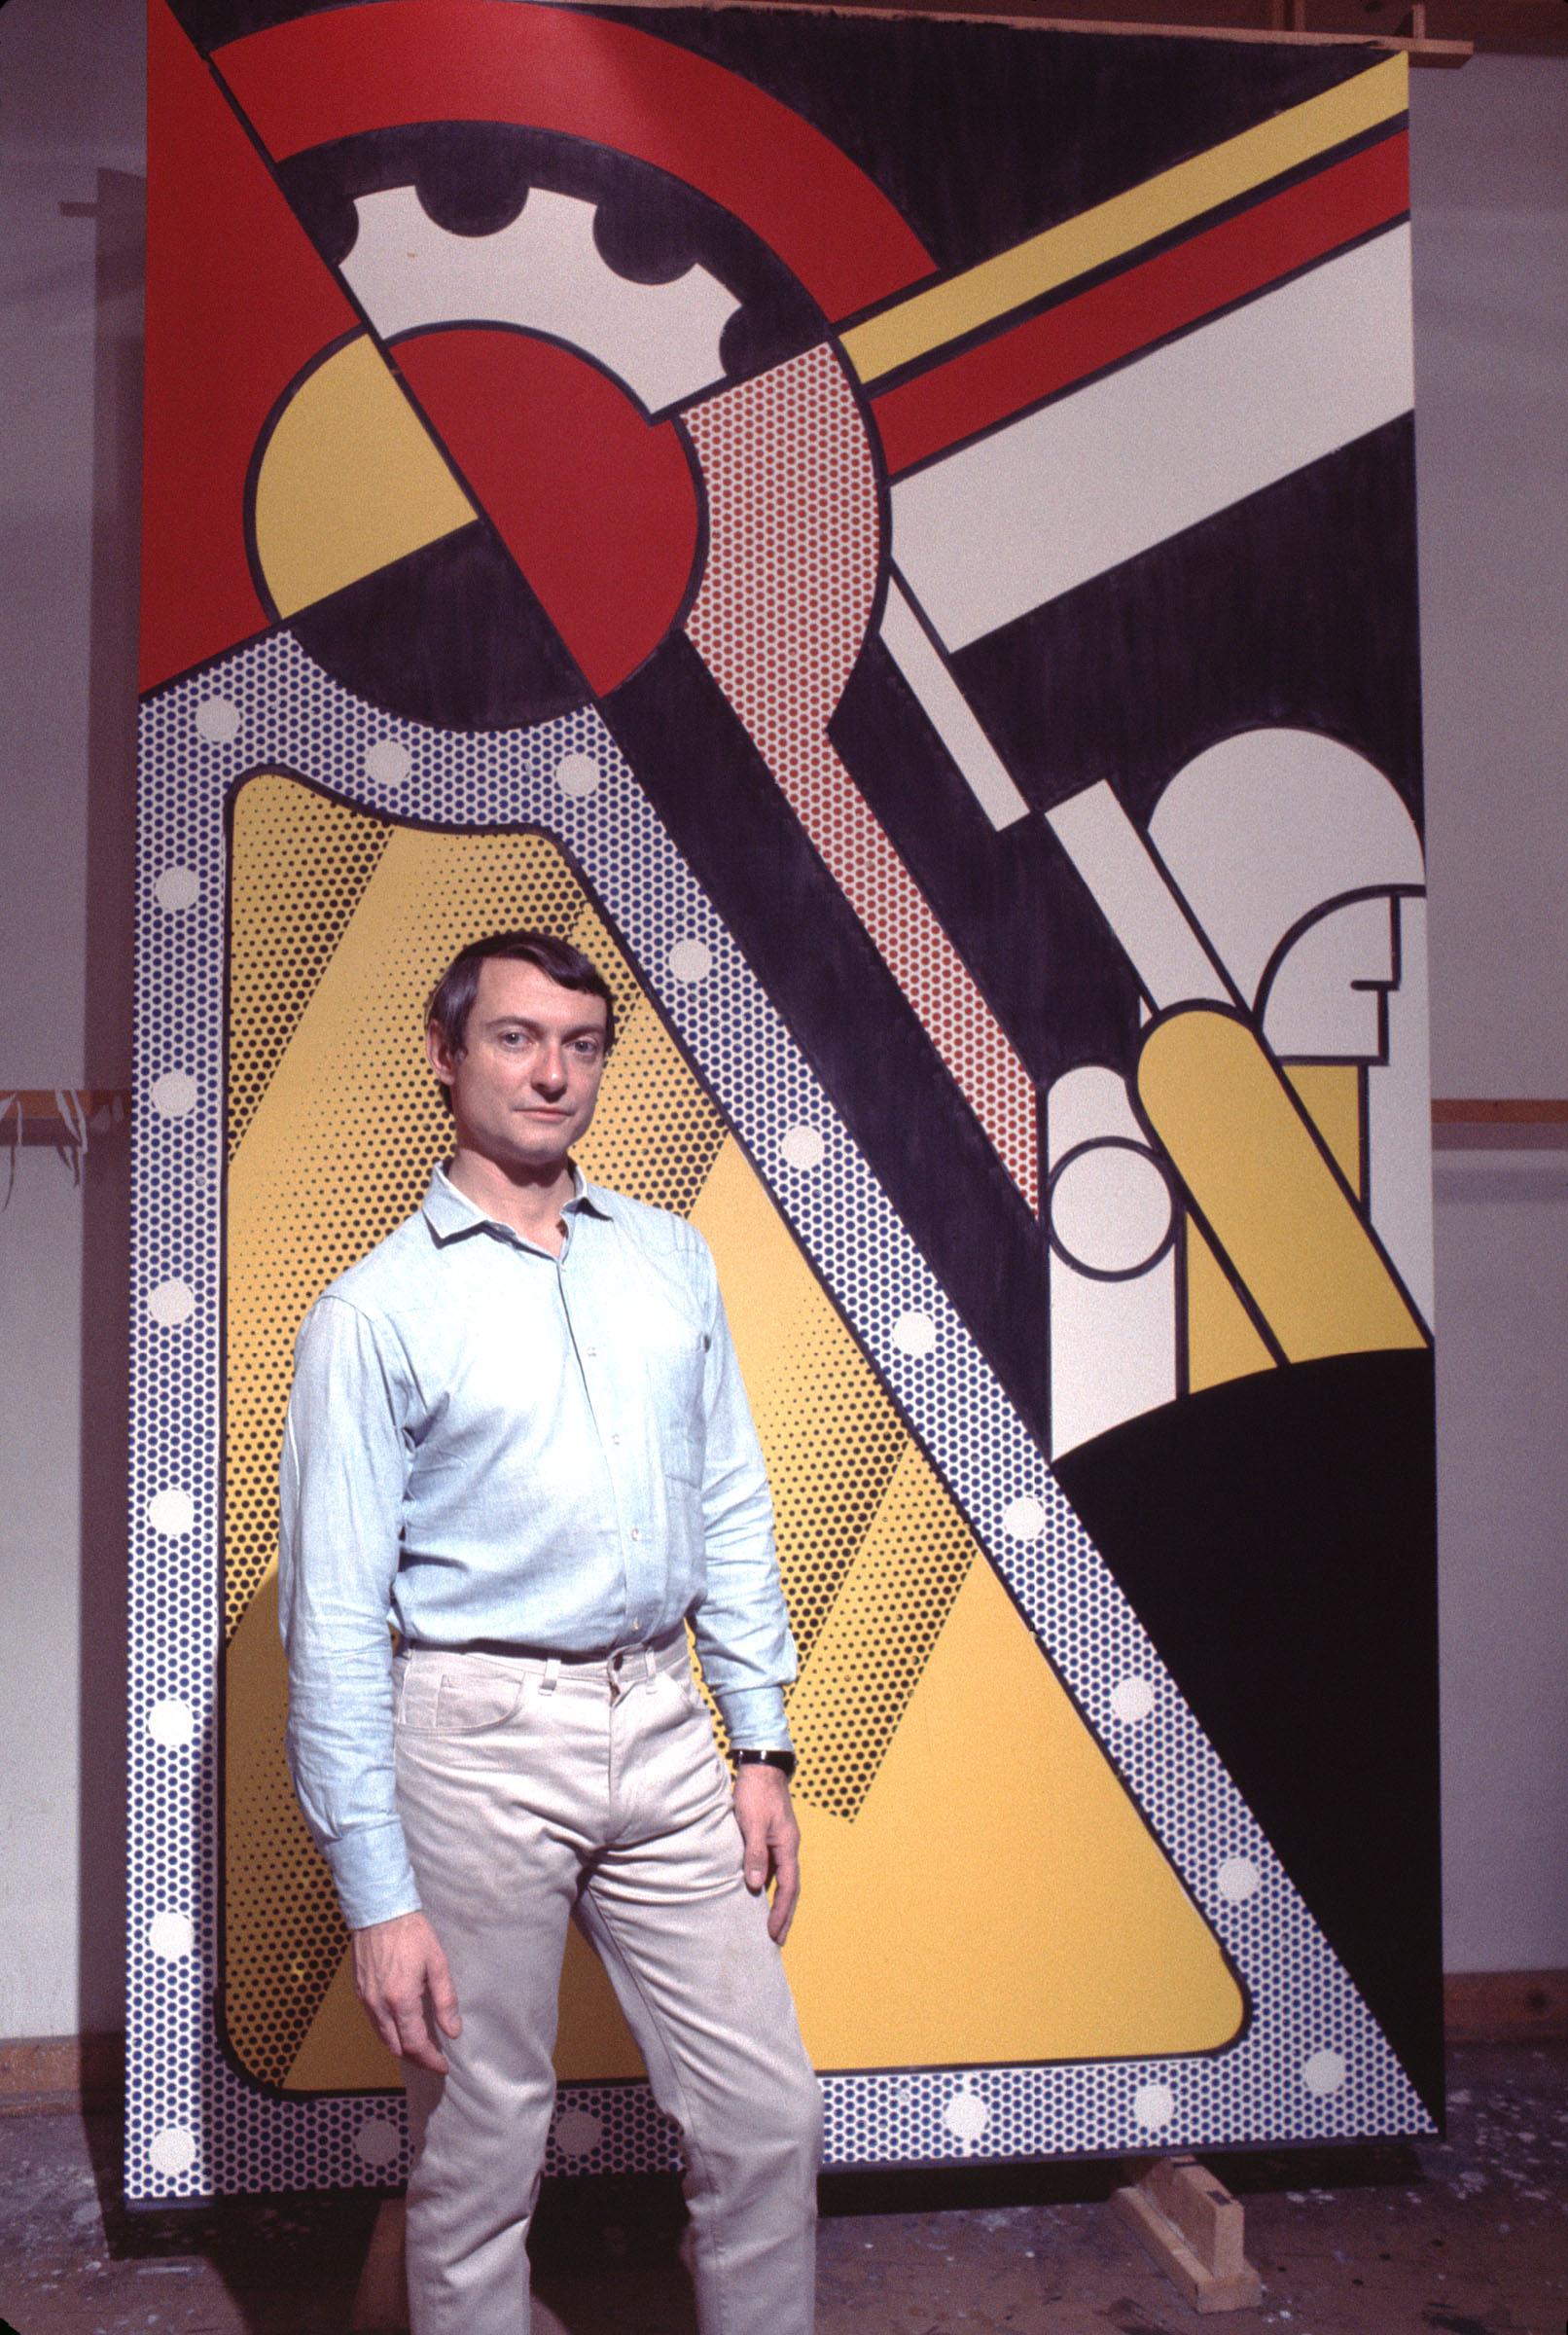 Jack Mitchell Color Photograph – Ausstellungsfotografie des Pop-Künstlers Roy Lichtenstein in seinem Atelier, Farbe 17 x 22"